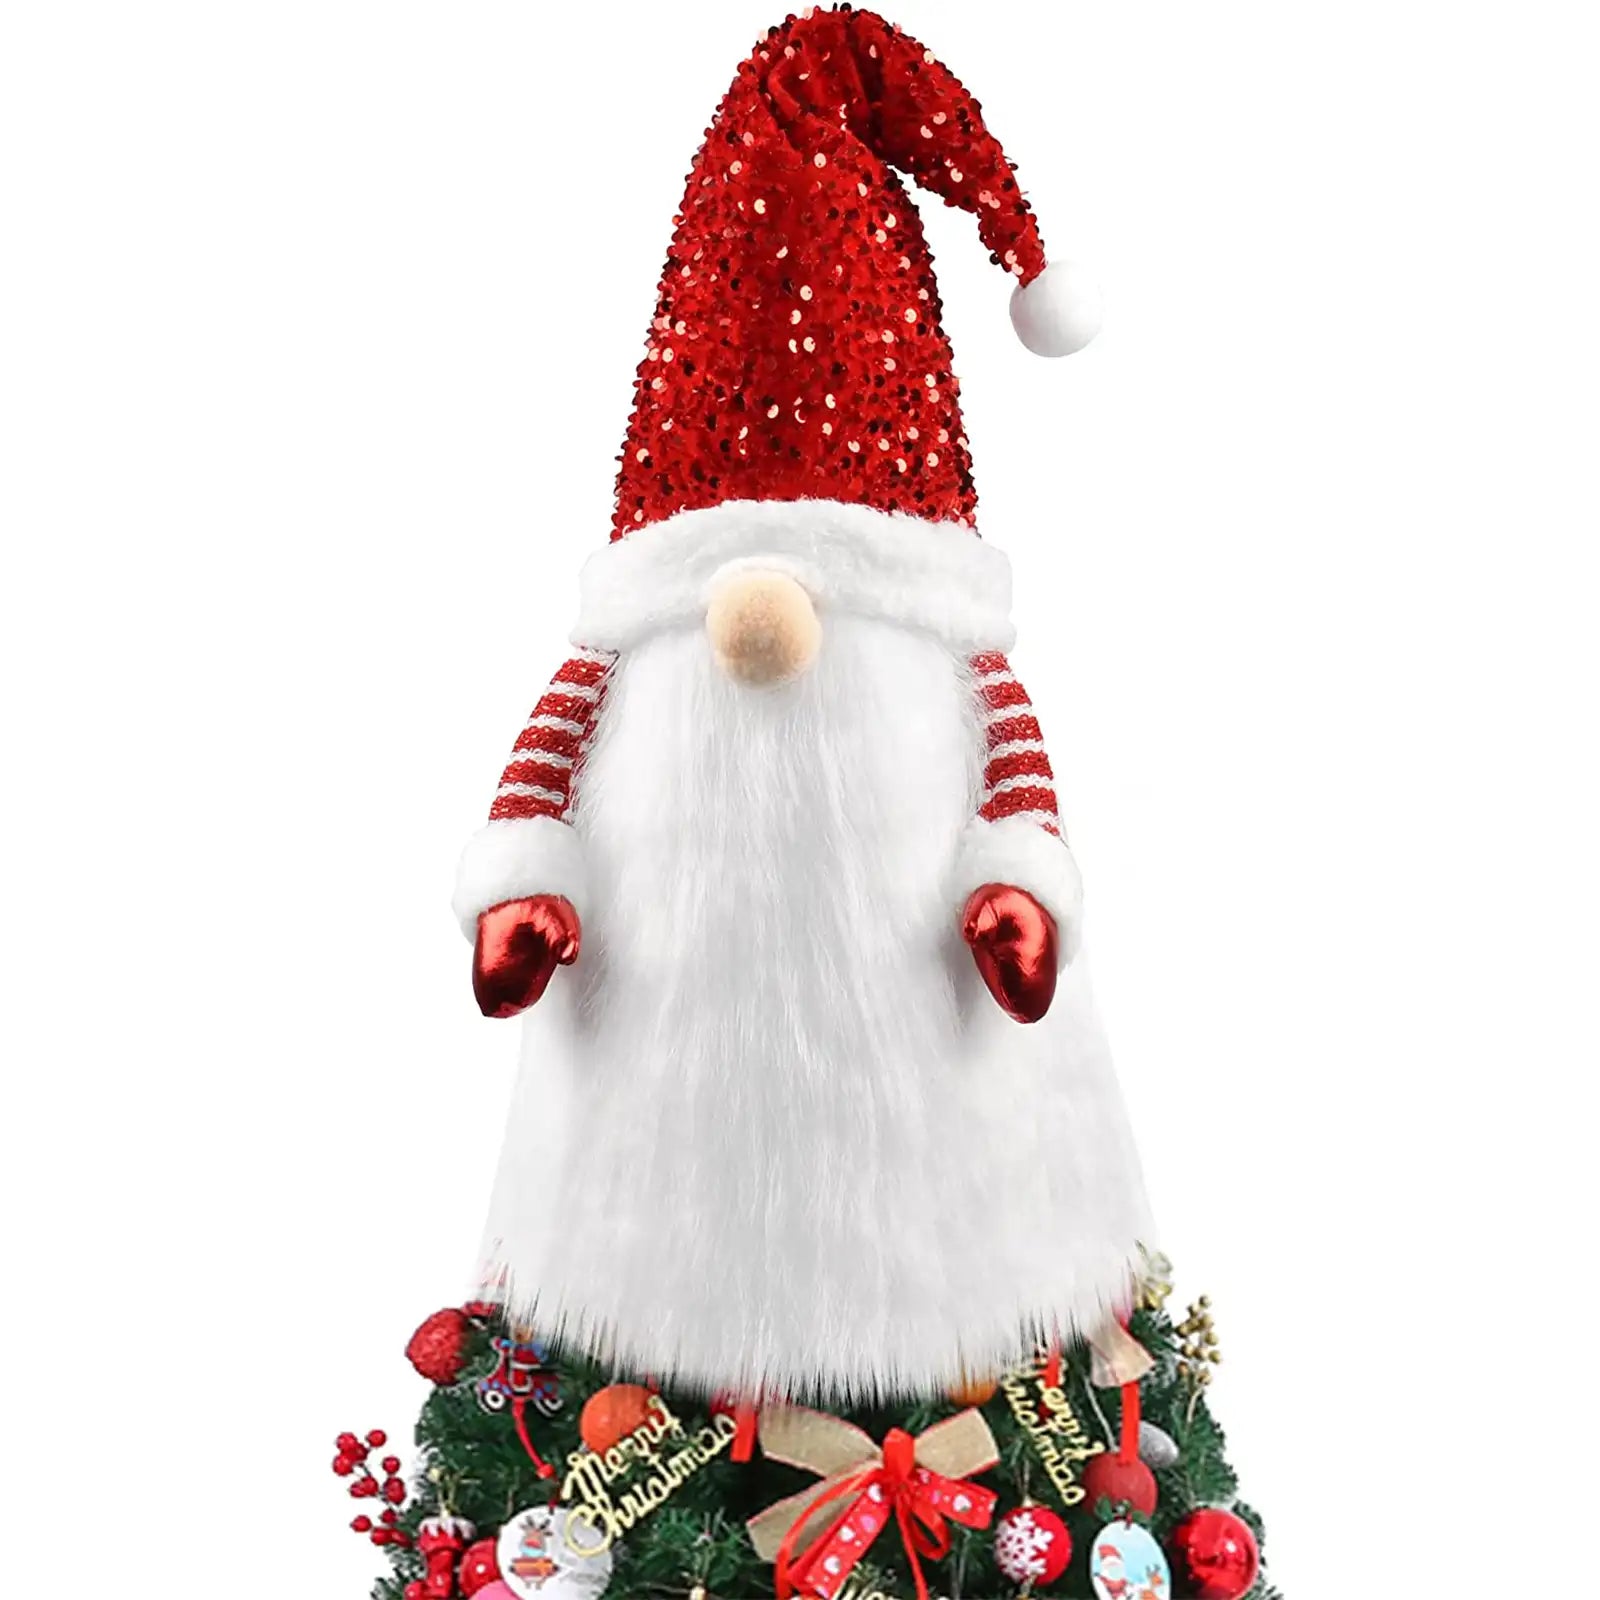 Adorno para árbol de Navidad, adorno para árbol con sombrero de copa, decoraciones navideñas hechas a mano 